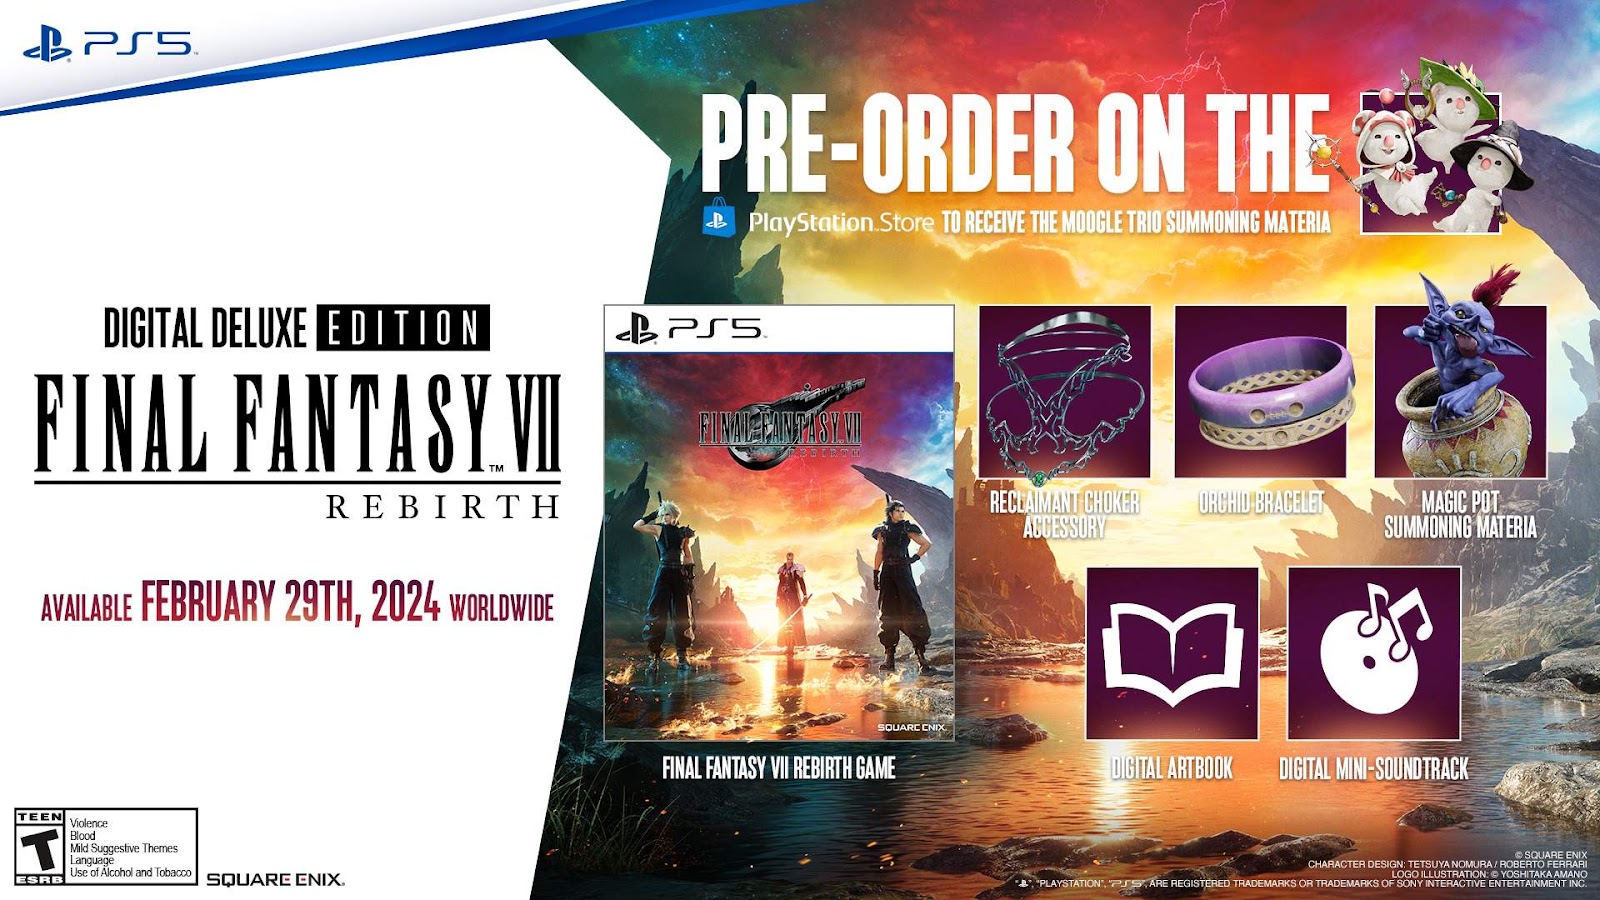  Final Fantasy VII Rebirth - Exclusive  Edition